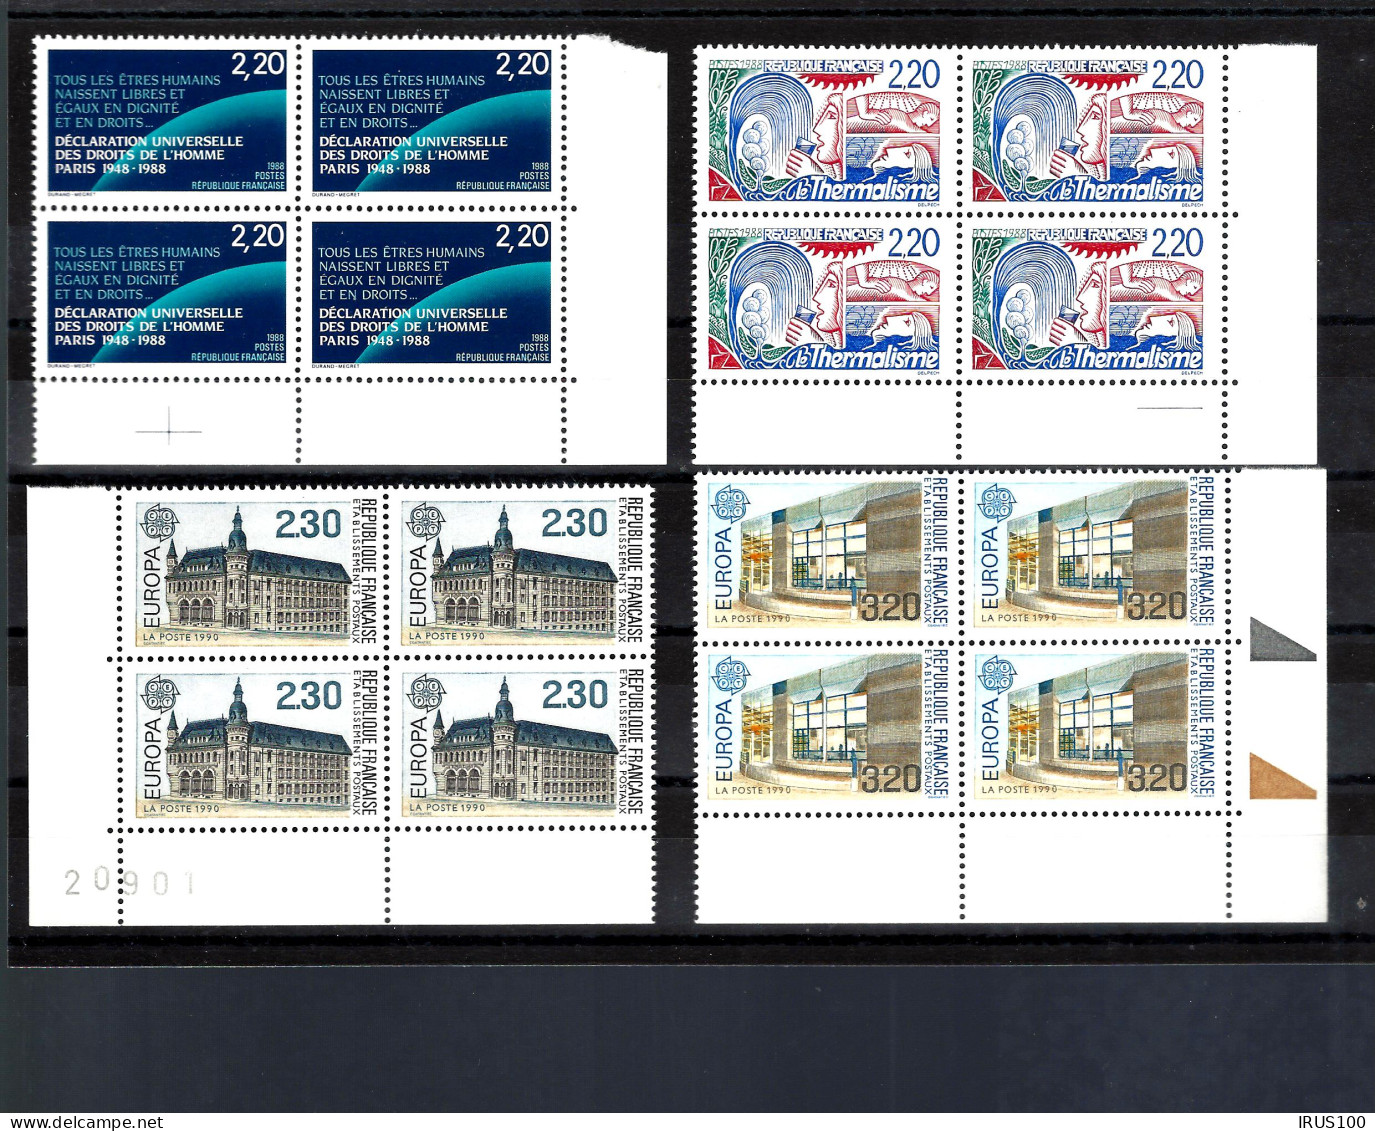 BLOCS DE 4 - COINS DE FEUILLE -1988 / 1990 ** MNH - DROITS DE L'HOMME - THERMALISME - EUROPAS - Unused Stamps